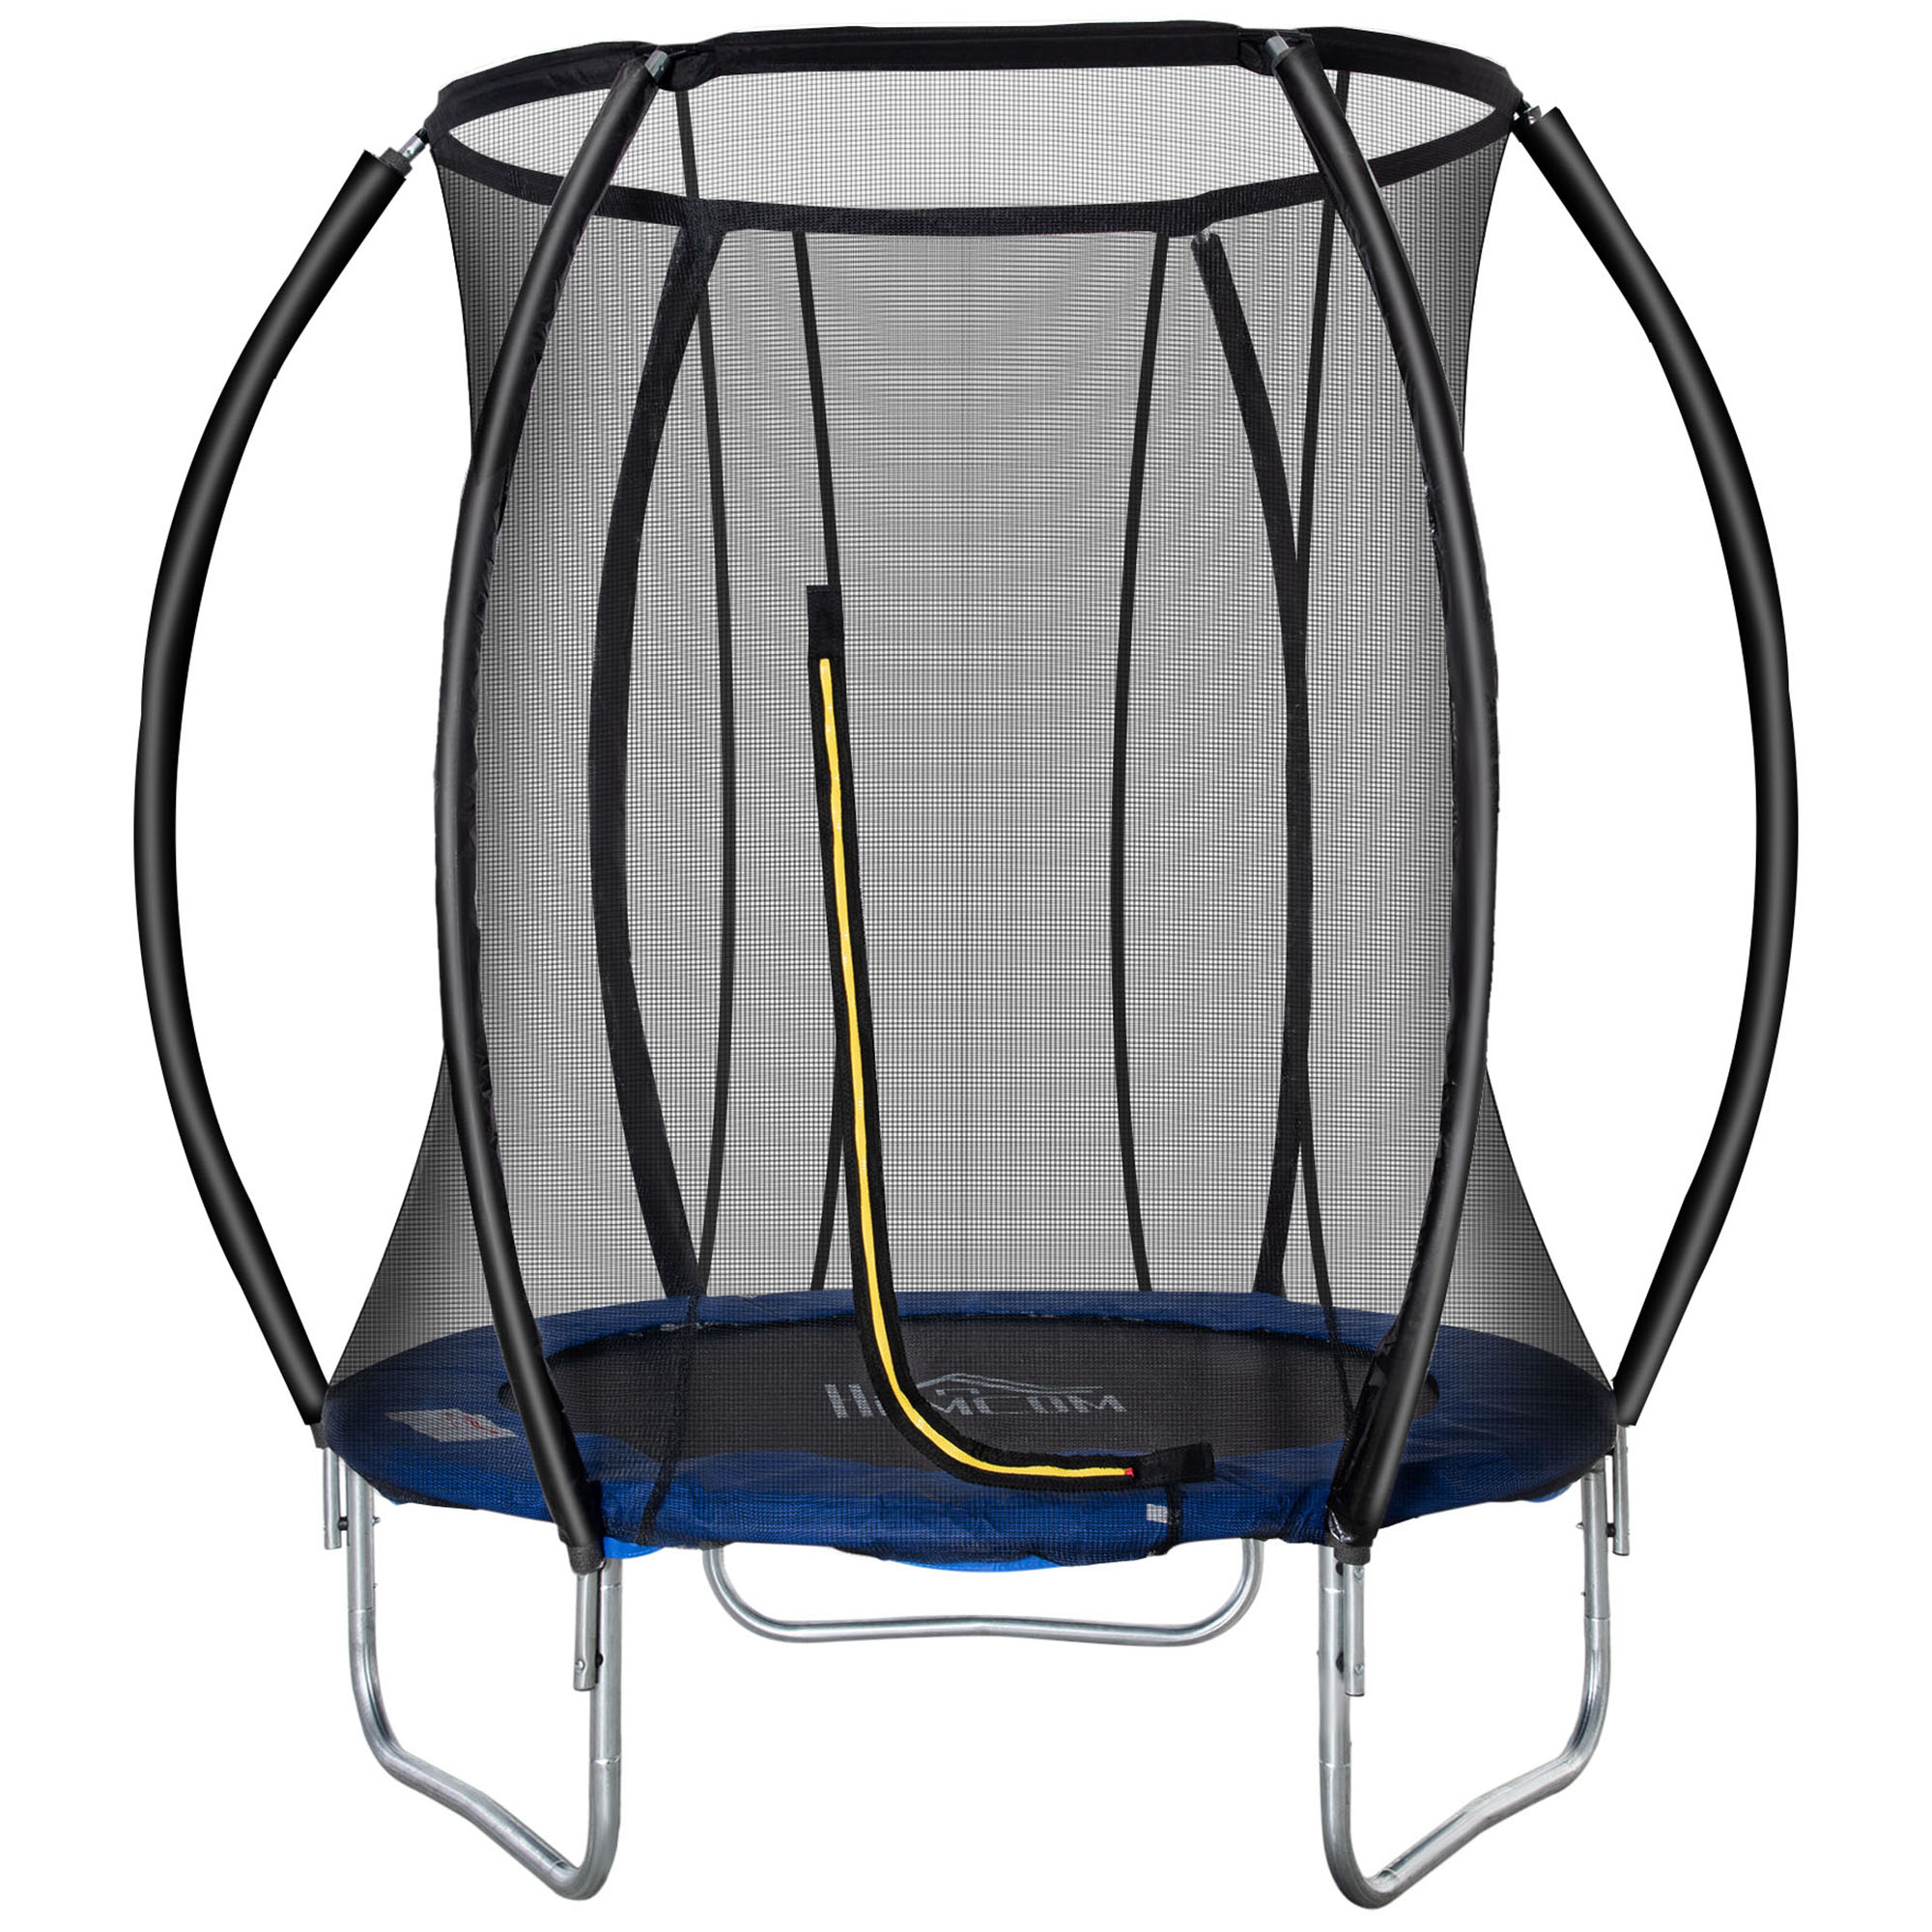 homcom trampoline pour enfants Ã˜ 183 cm avec filet de sÃ©curitÃ© et revÃªtement antirouille galvanisÃ© usage extÃ©rieur bleu et noir